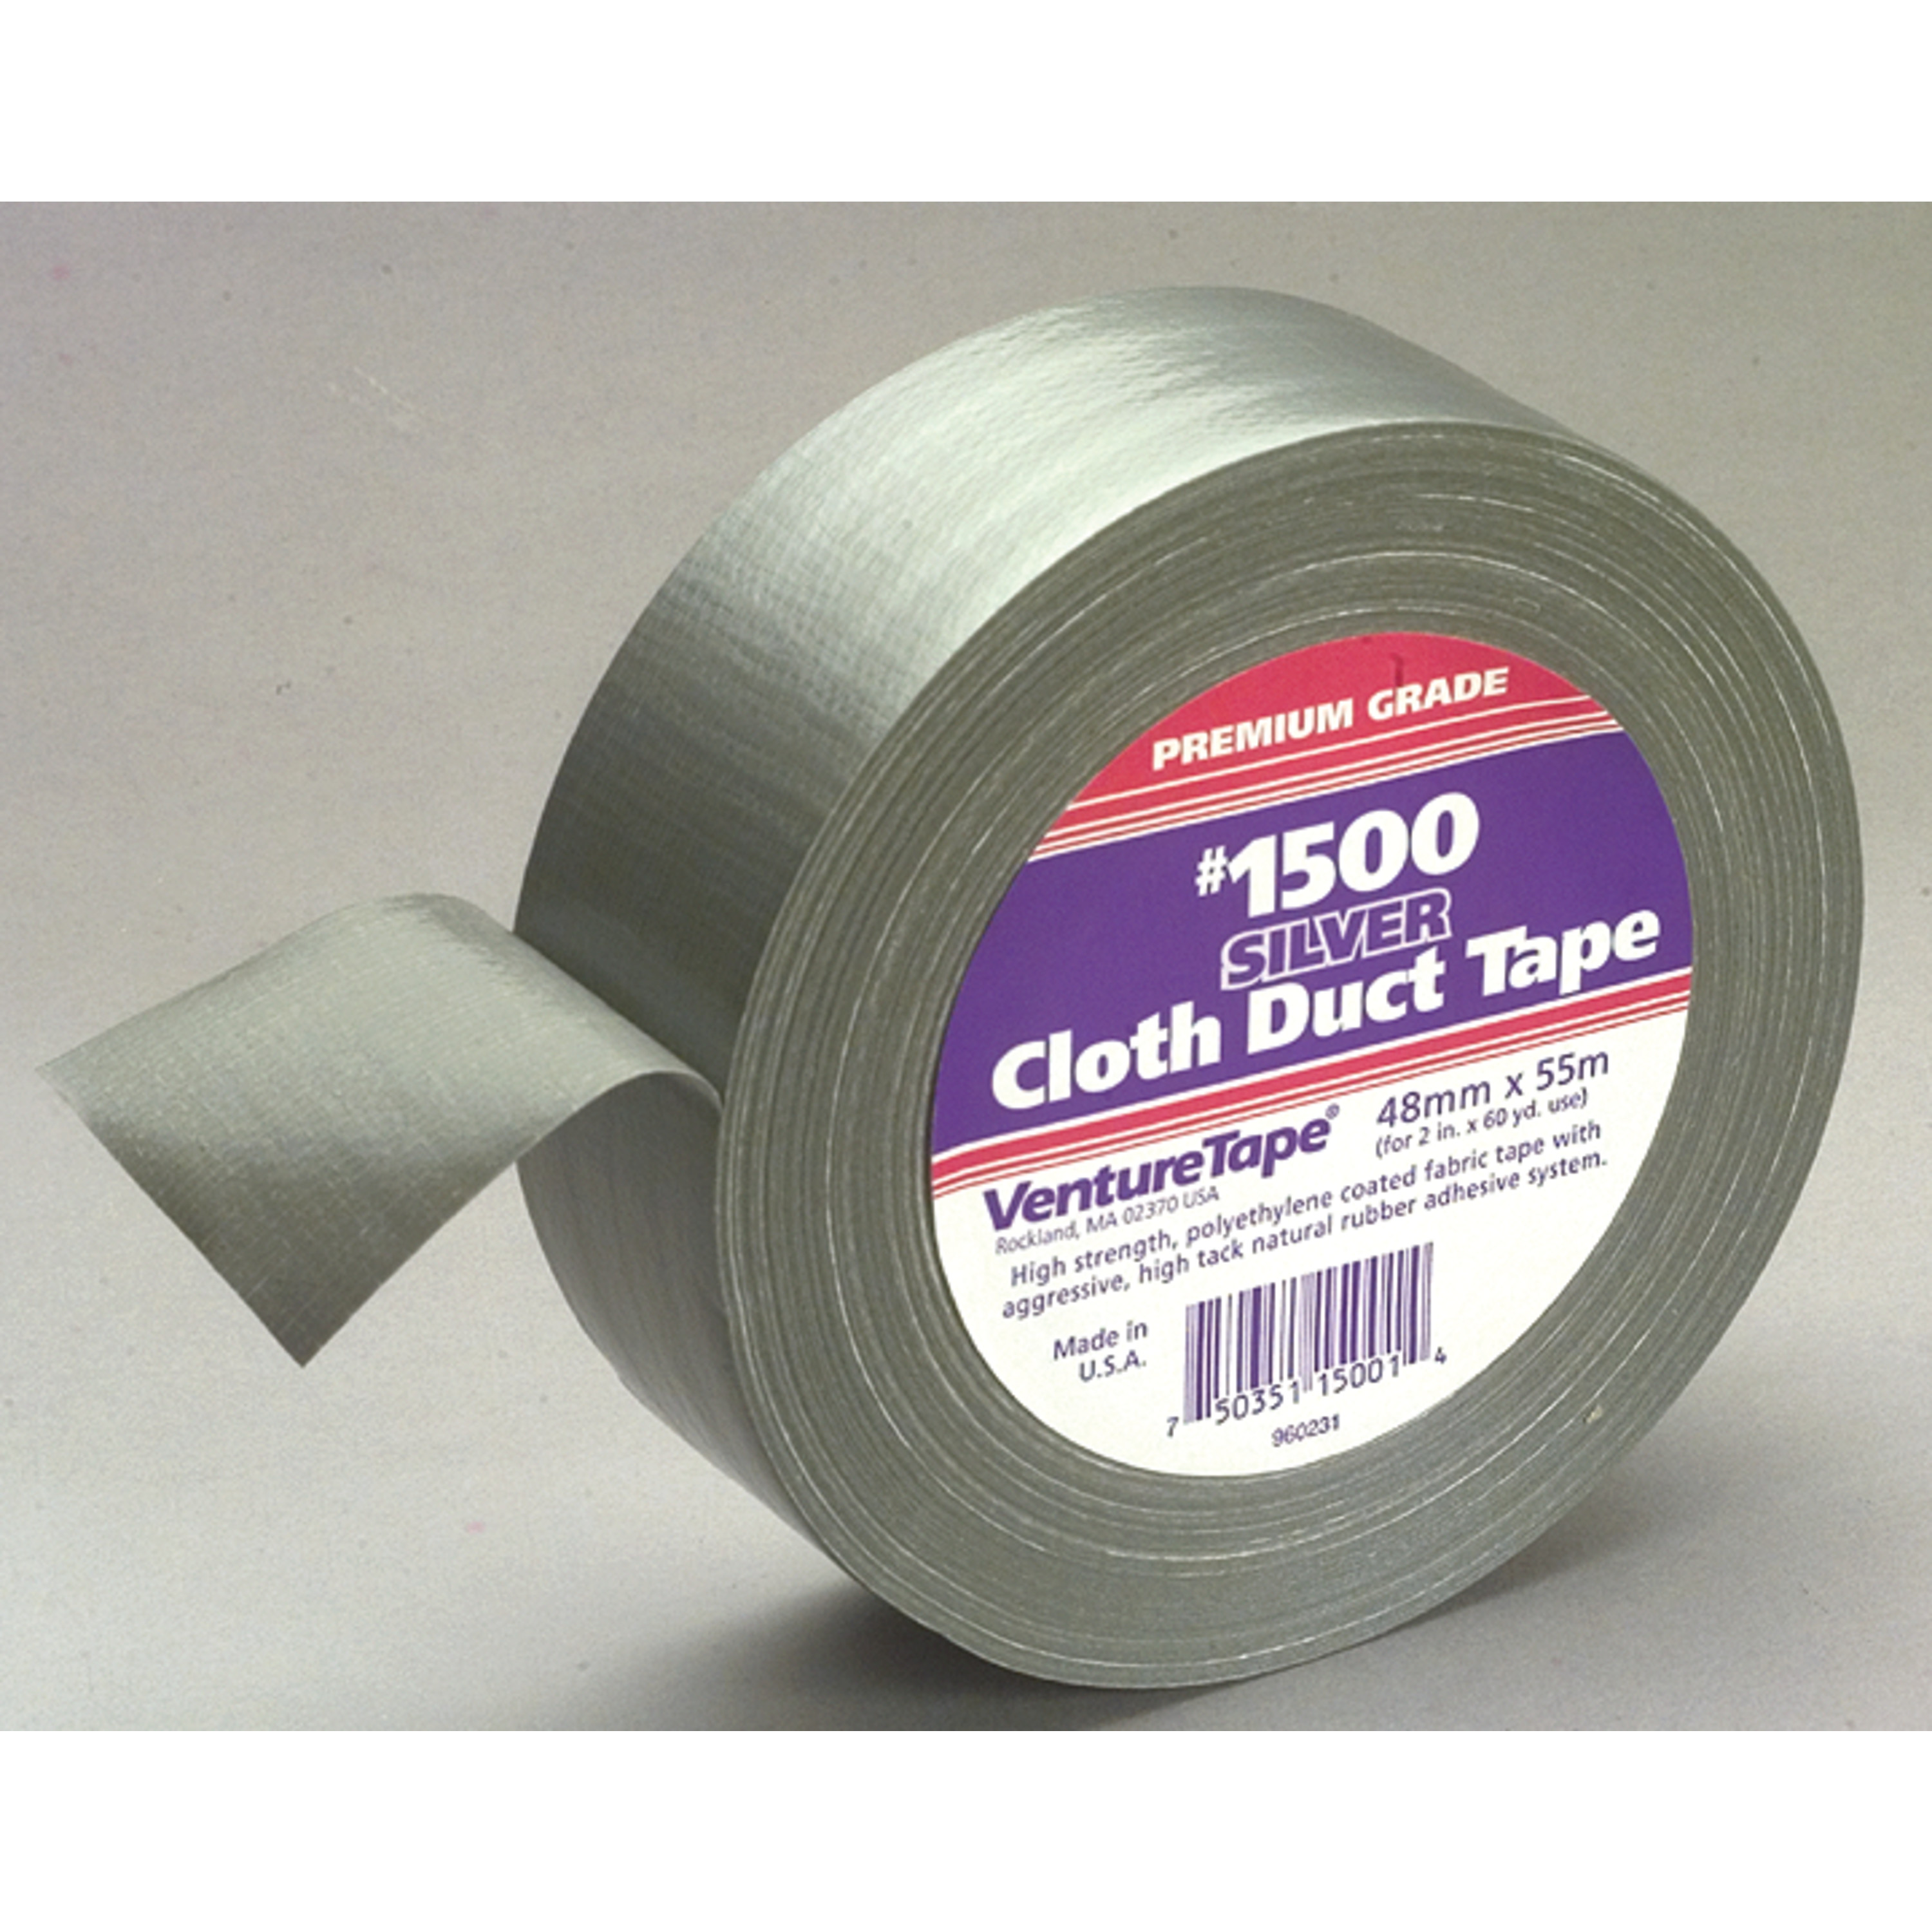 3M™ Venture Tape™ Cloth Duct Tape 1500, Silver, 72 mm x 55 m (2.83 in x
60.1 yd), 16 per case